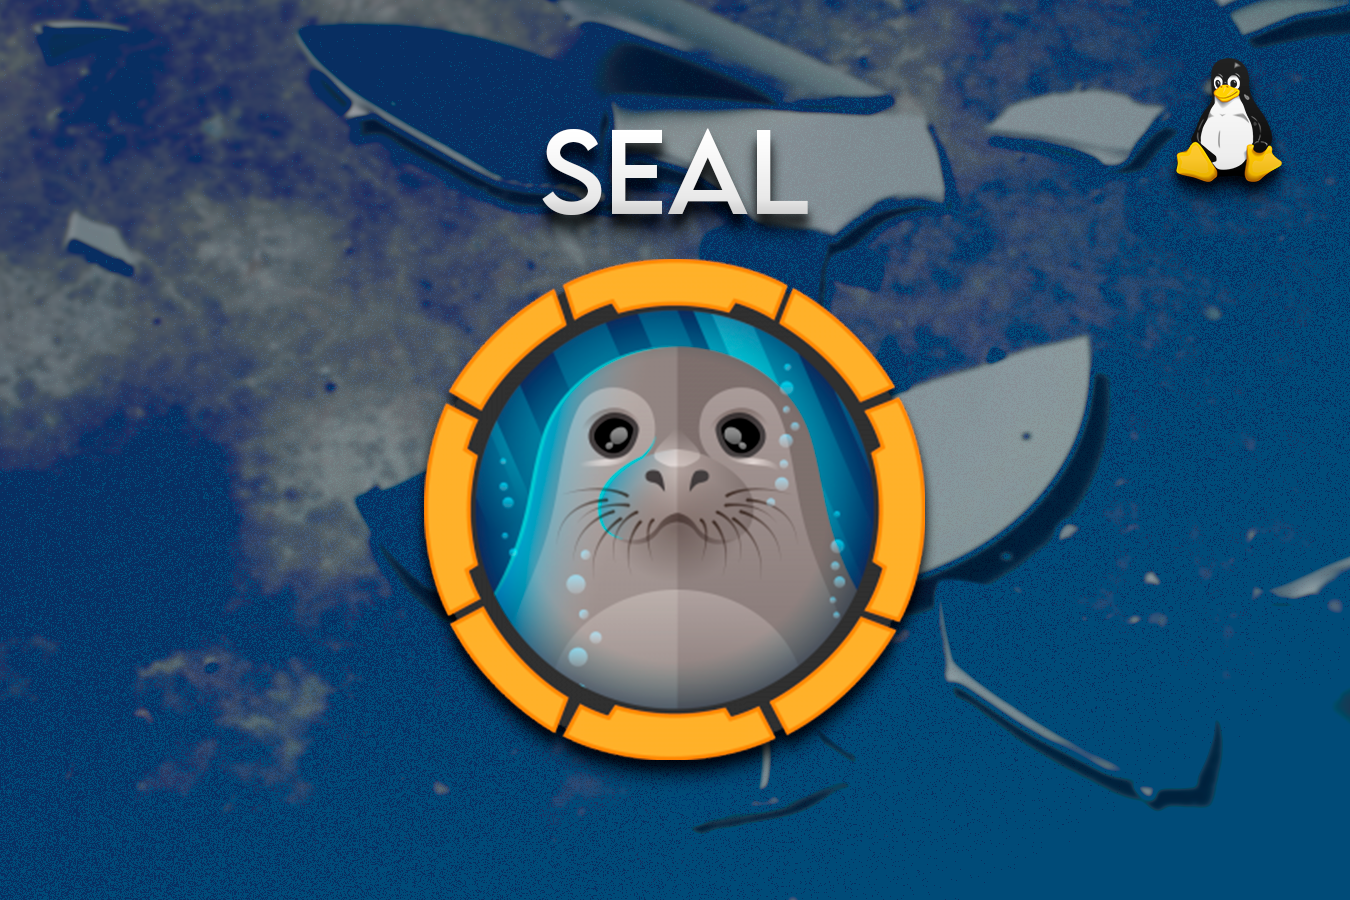 HackTheBox - Seal